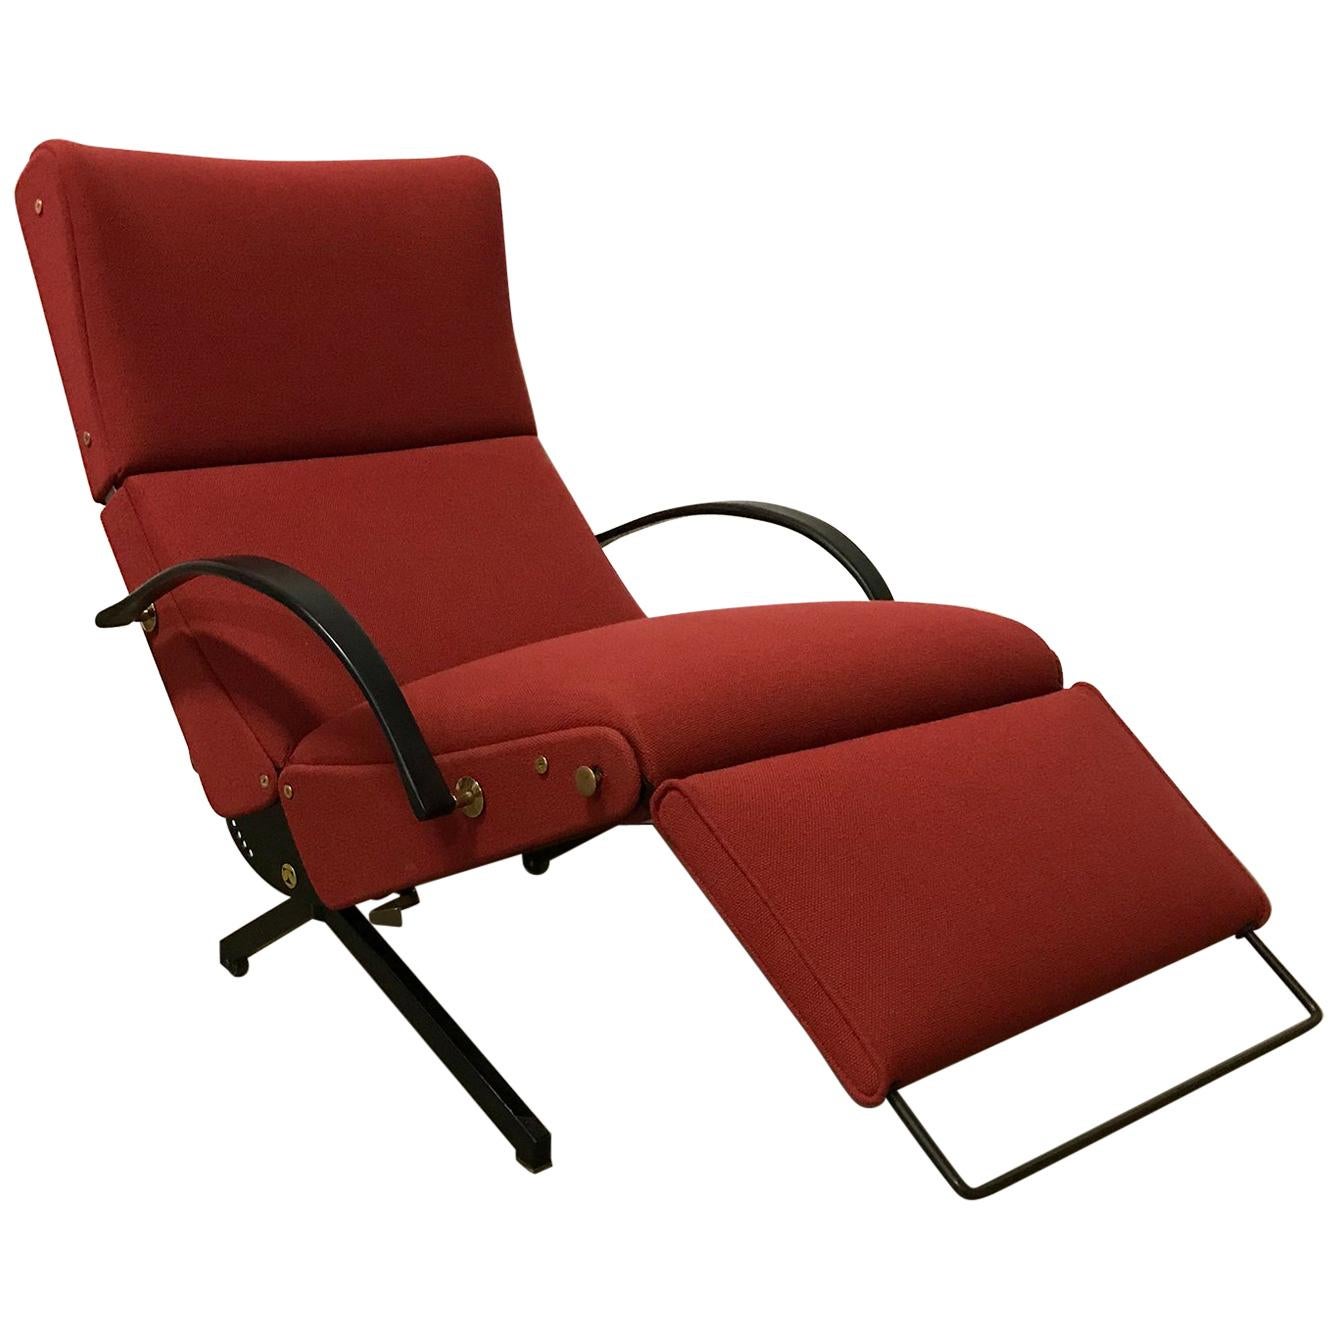 Osvaldo Borsani fauteuil de salon réglable P40 en tissu rouge terreux, 1956